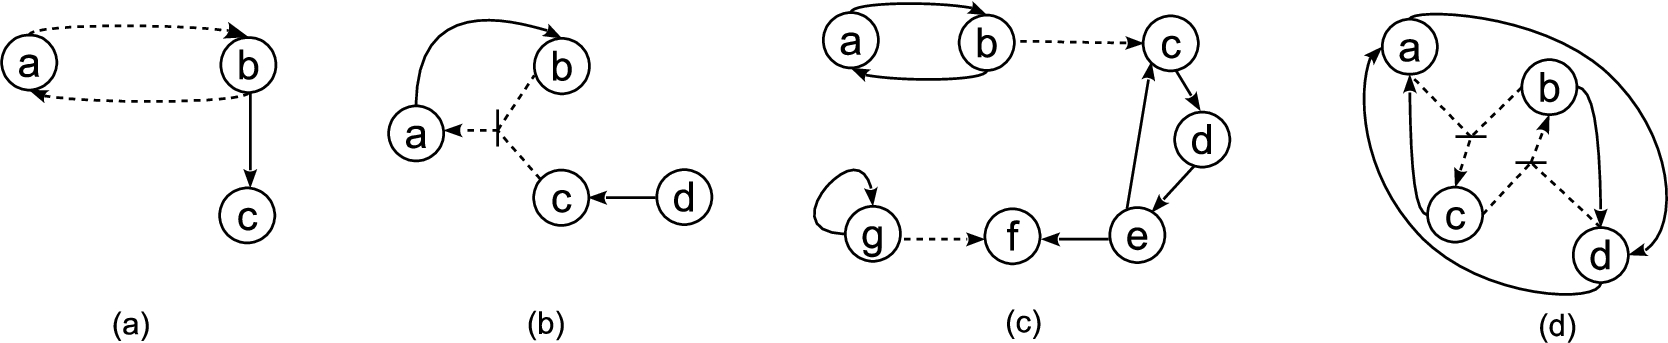 Four AFNs: (a) G1, (b) G2, (c) G3, (d) G4.